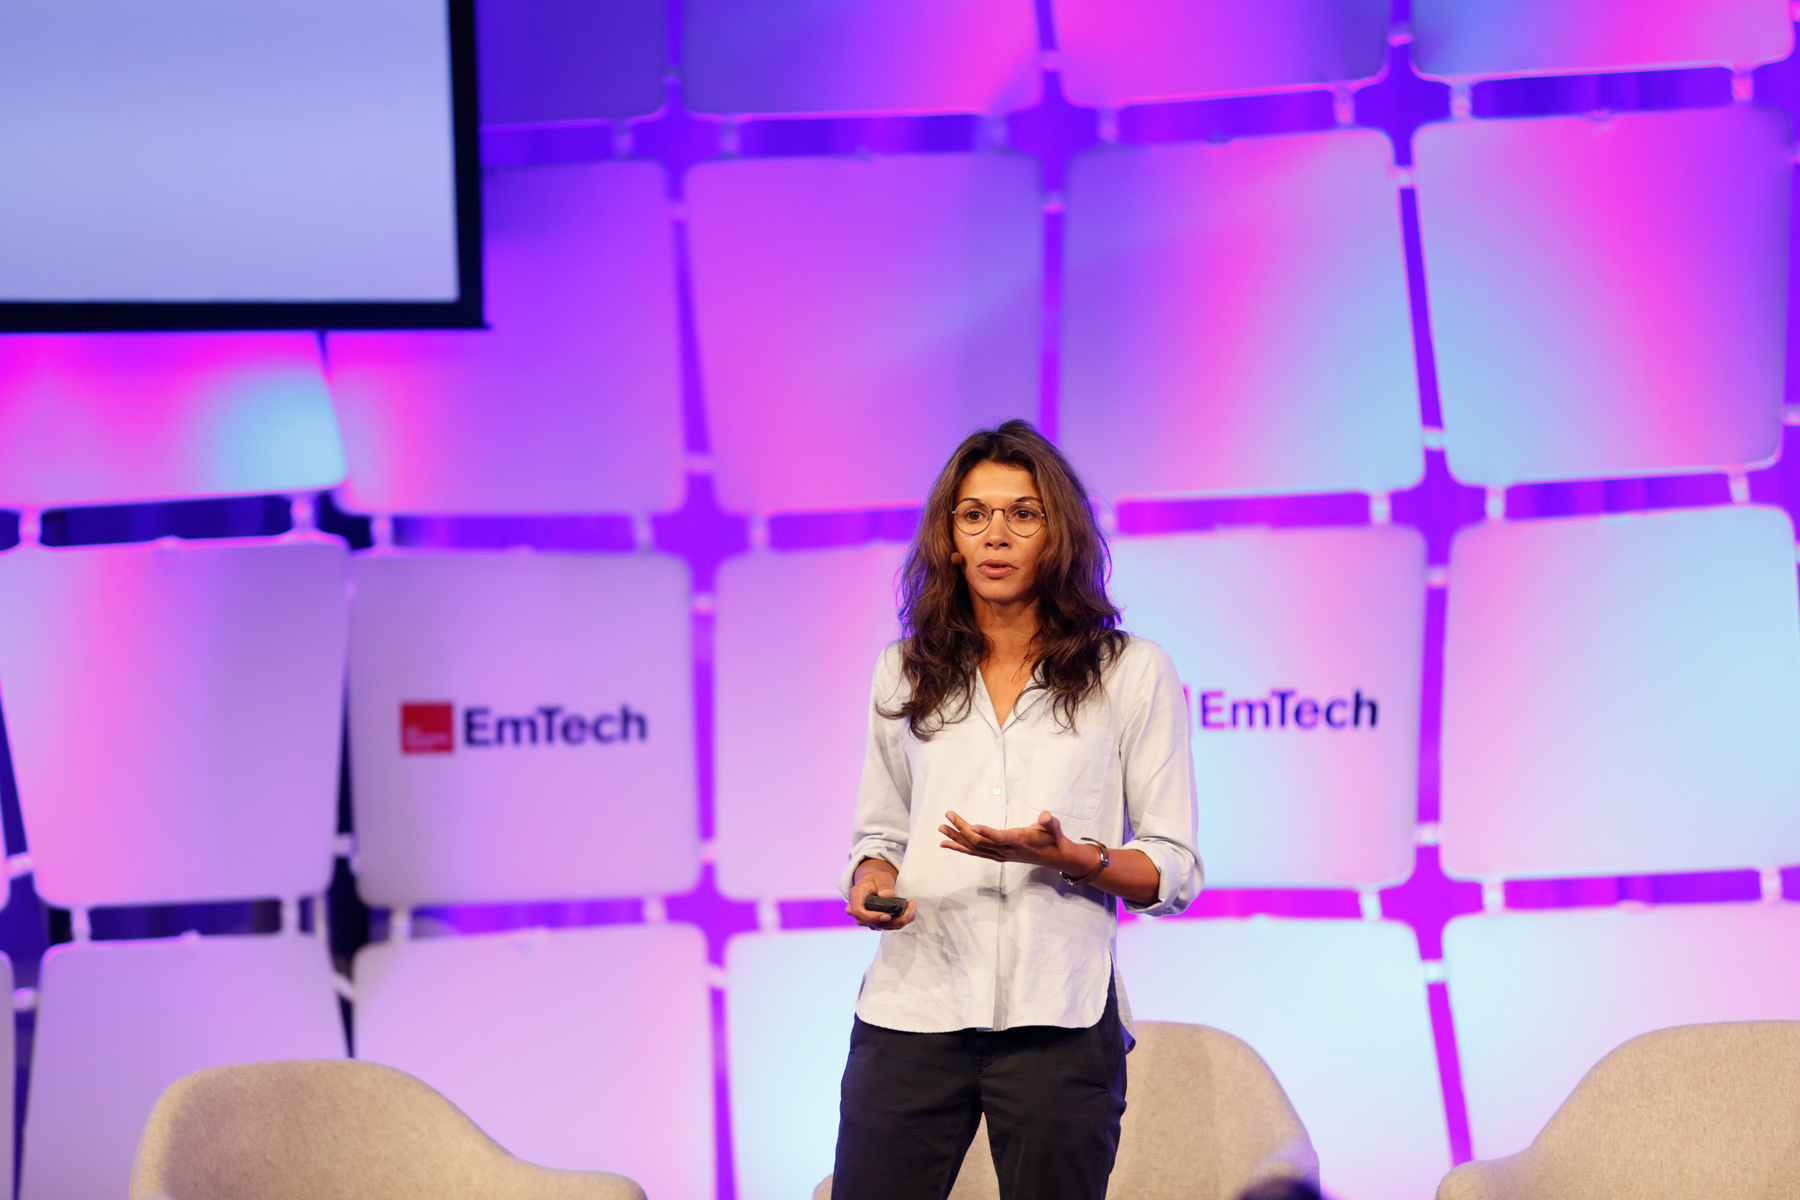 Jessica Brillhart speaking at EmTech MIT 2016.